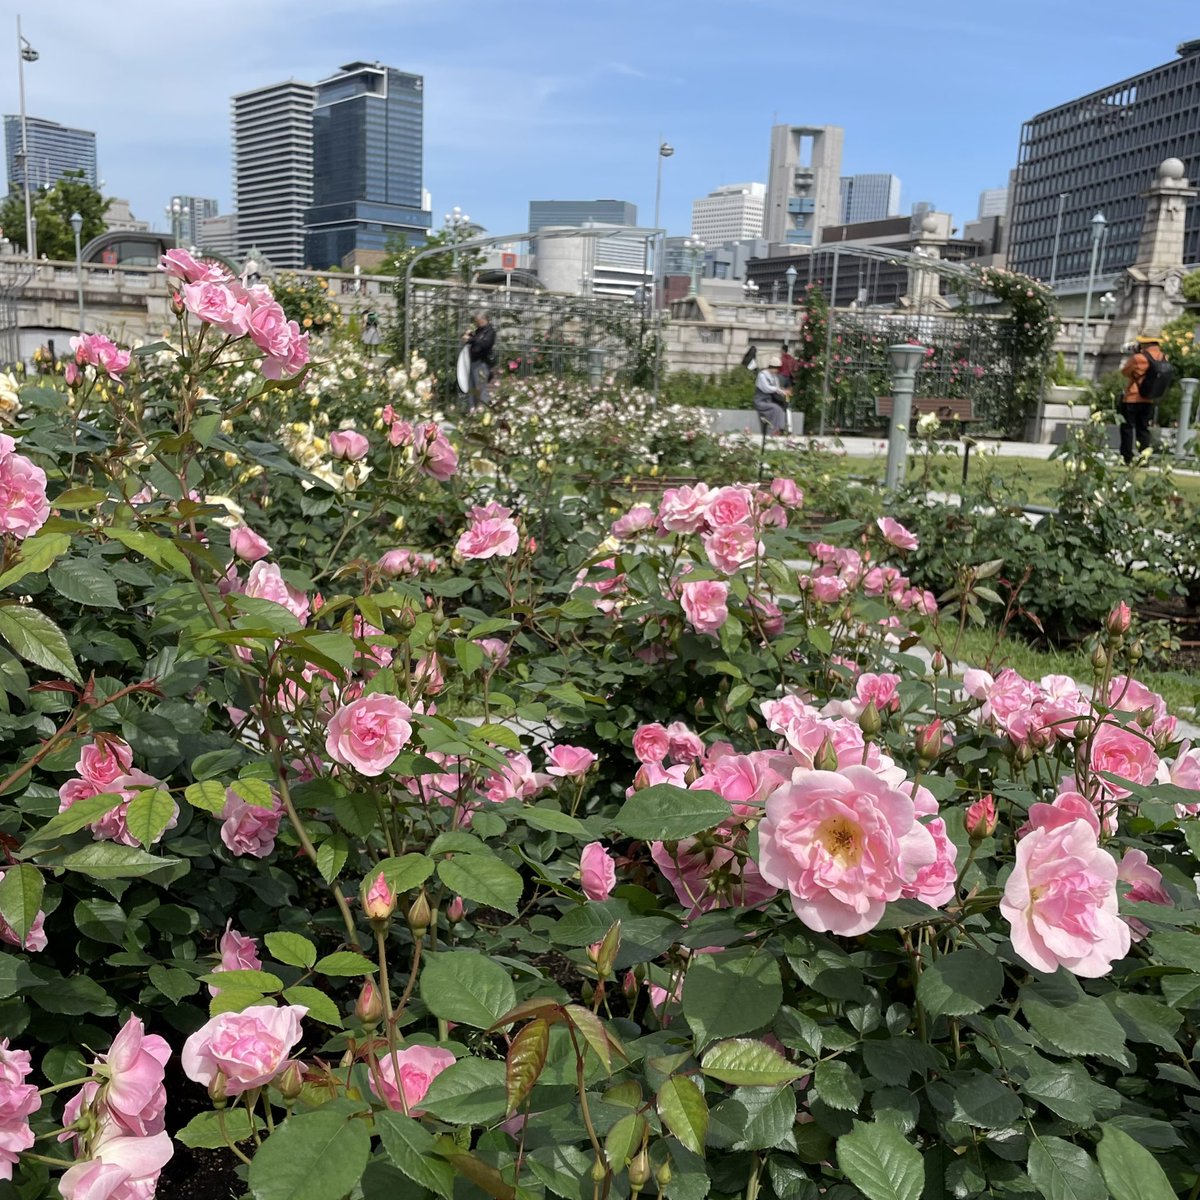 中之島公園のバラが咲き始めています🌹 まさに都会のオアシス。華やかな香りに癒やされますね♪ 中之島公園へは、なにわ橋駅または北浜駅が便利です。 #京阪 #Keihan